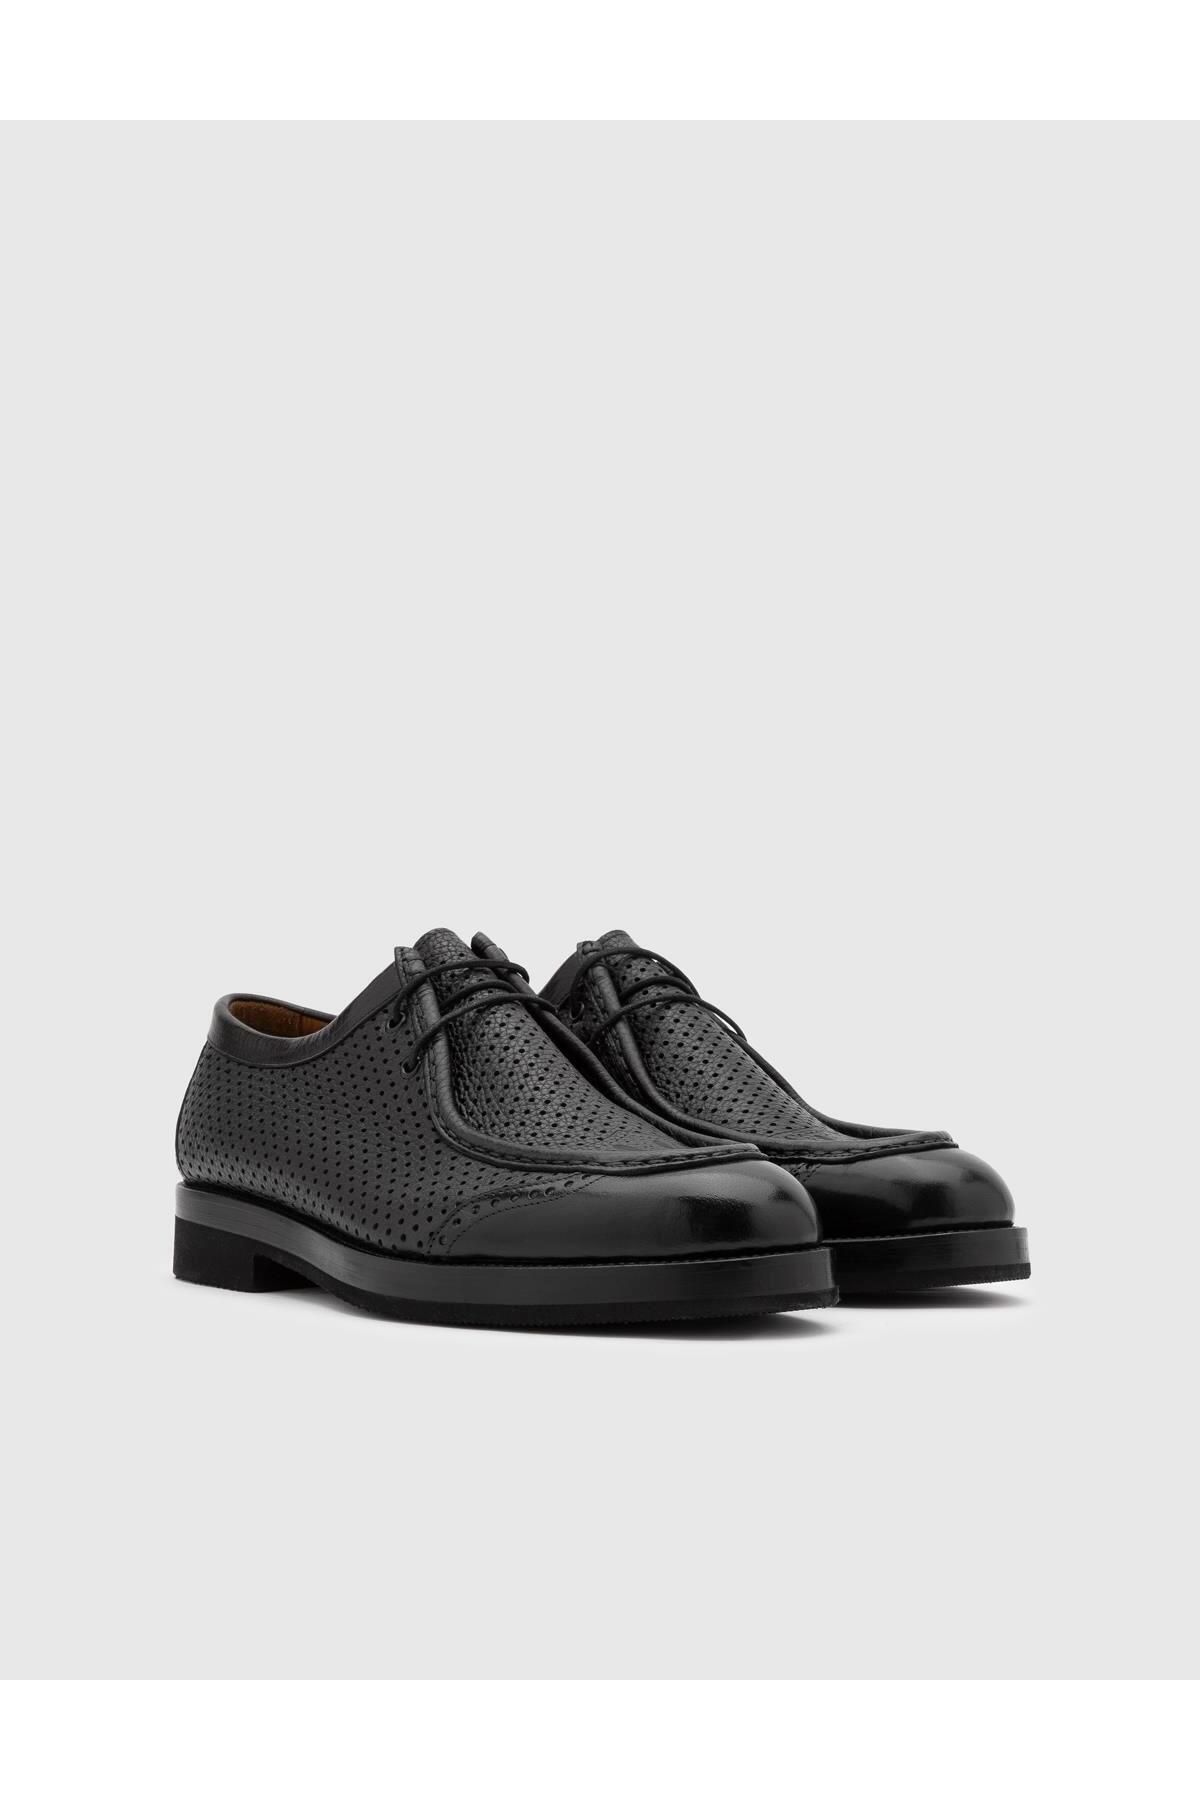 İlvi Luigi Hakiki Bufalo Deri Erkek Siyah Oxford Ayakkabı